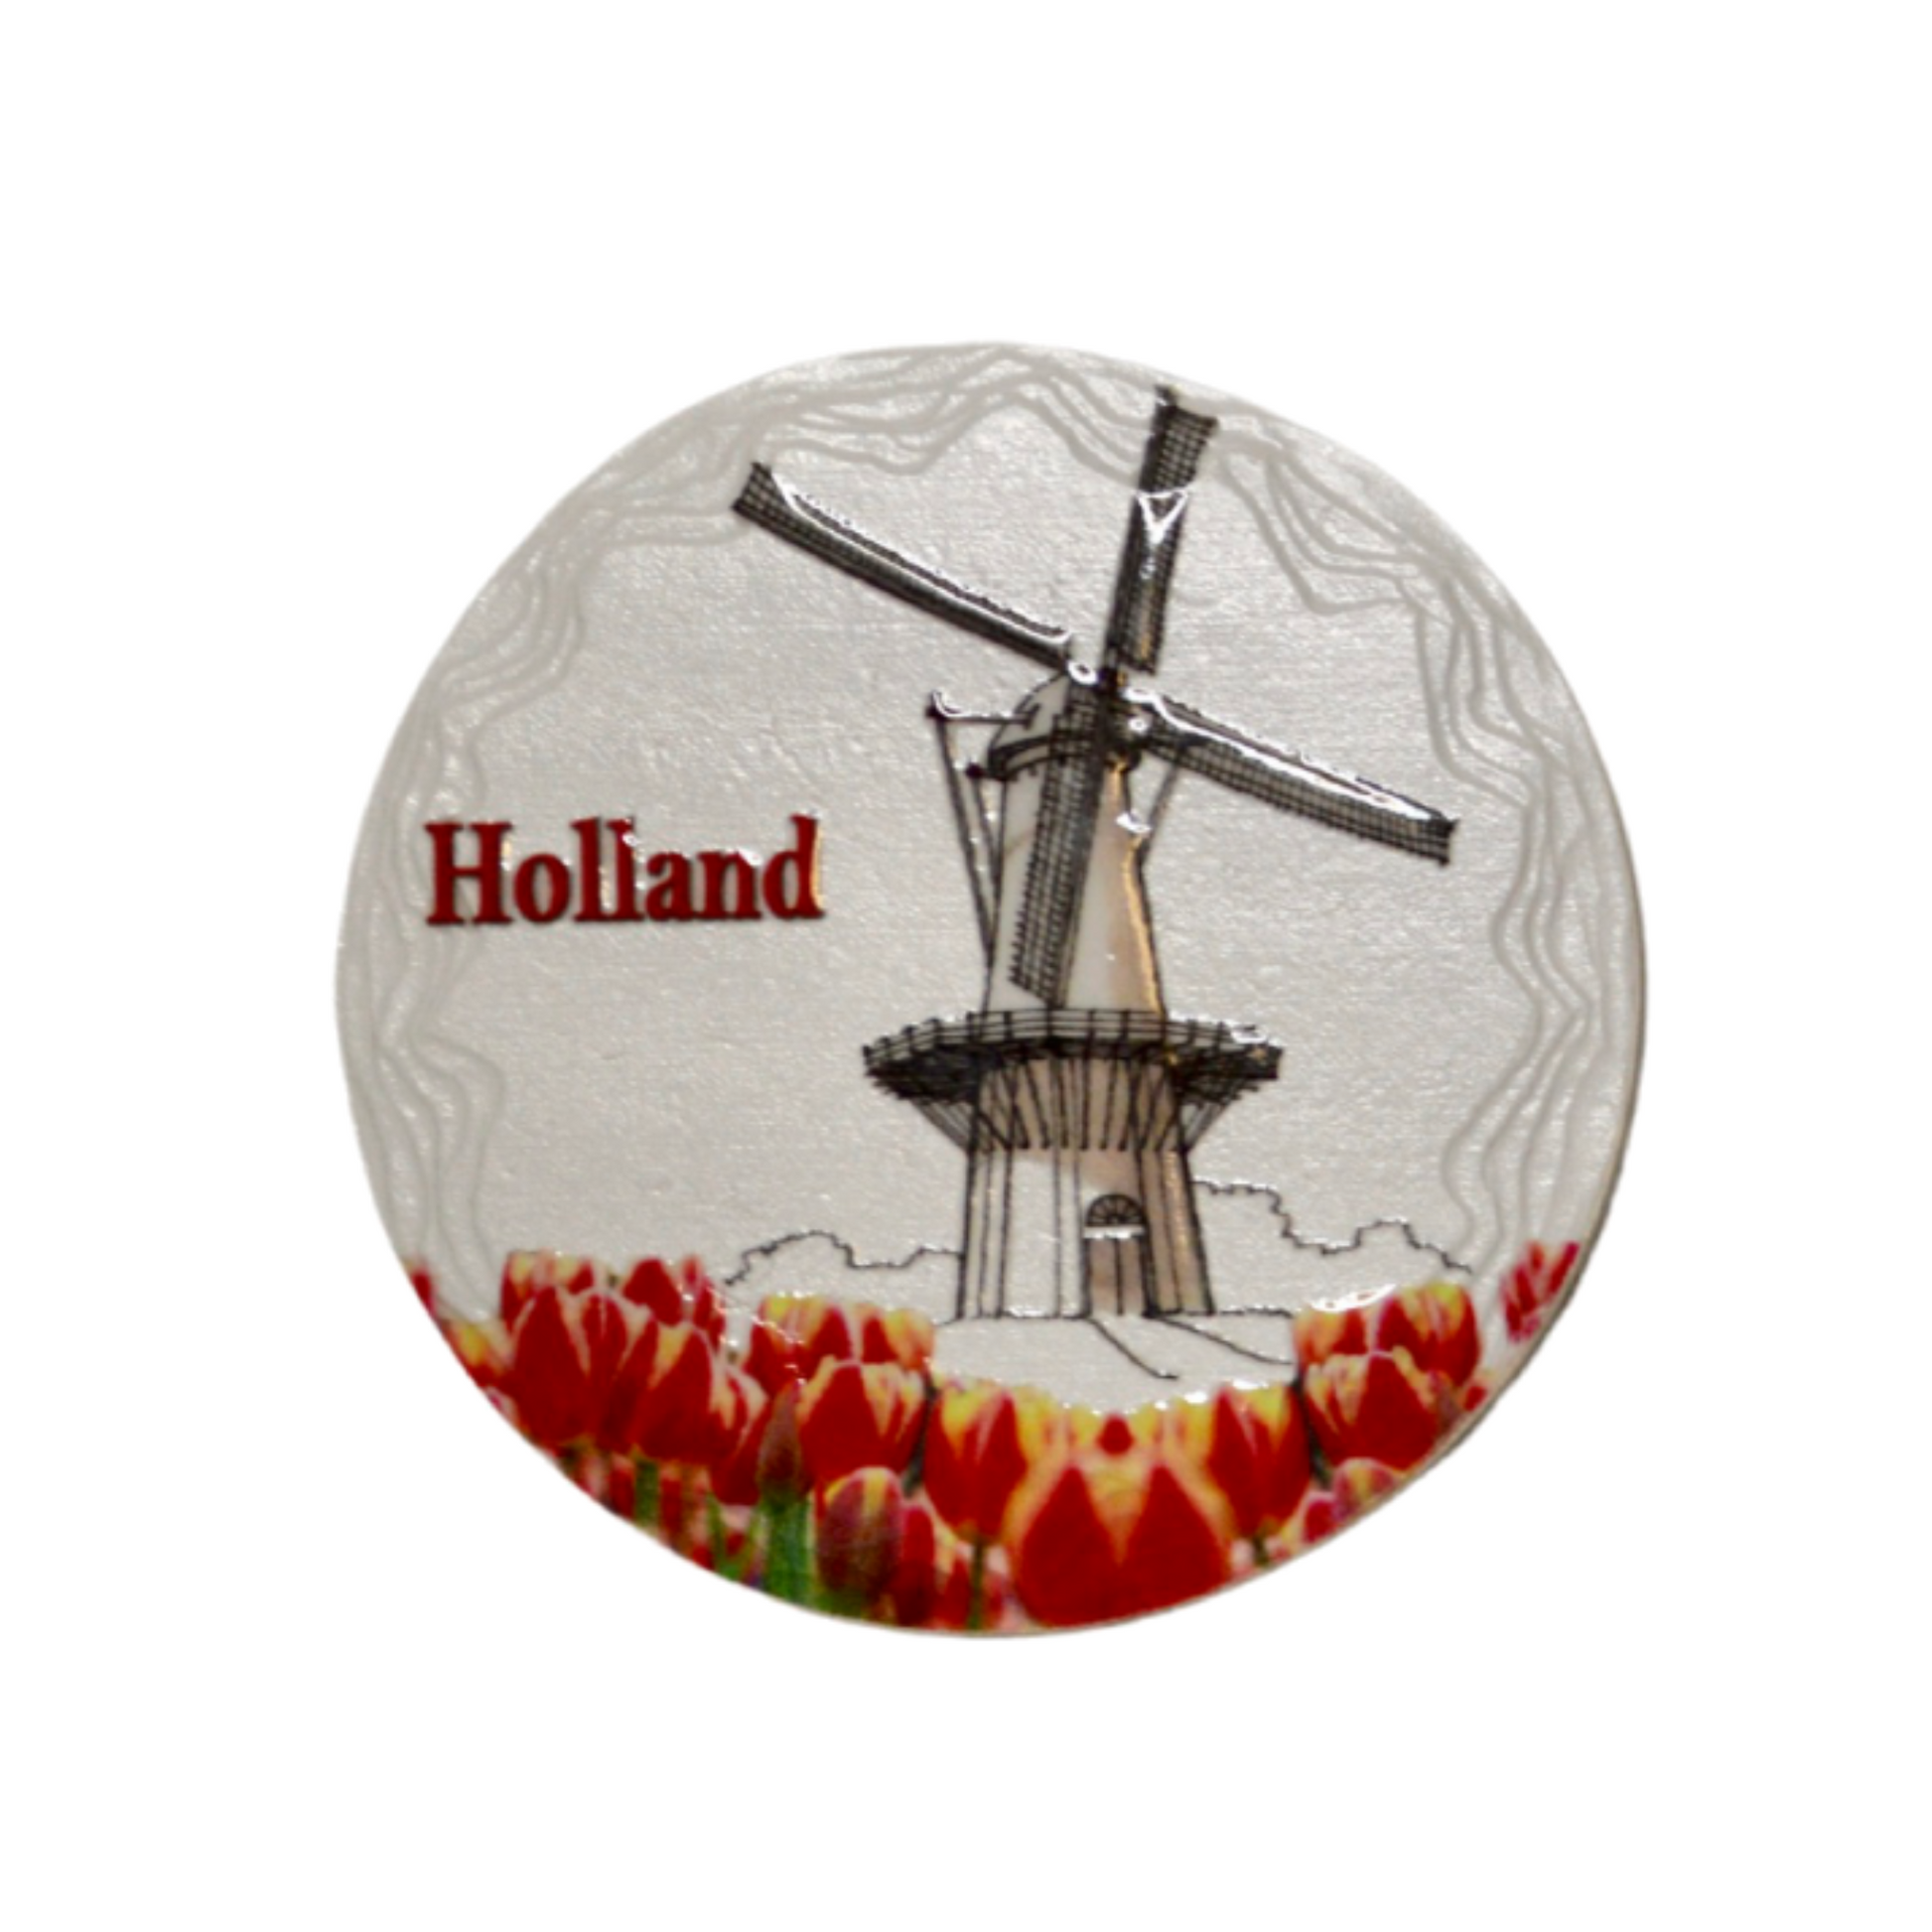 De koelkastmagneet is een uniek en leuk Holland souvenir. Deze magneet is een must-have voor iedereen die trots is op Nederland! Het is ook voorzien van een sterke magnetische achterkant, waardoor het zeker vast zal blijven zitten aan elke koelkast.